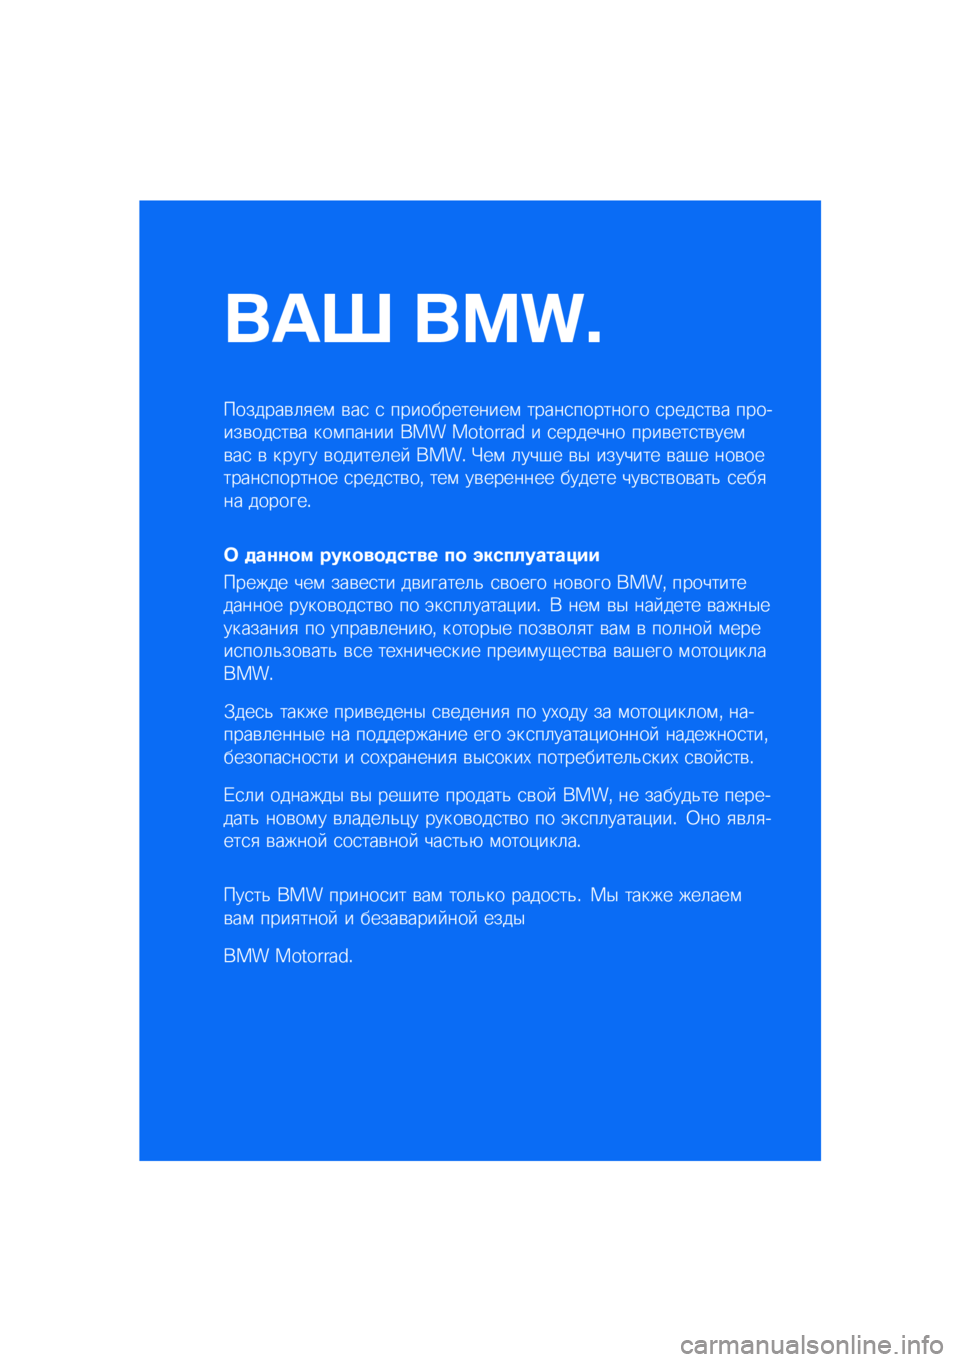 BMW MOTORRAD F 900 R 2021  Руководство по эксплуатации (in Russian) ��� ����\b
�������\b�	�
��\f �\b��
 �
 �������������\f �����
�������� �
����
��\b� �������\b���
��\b� ���\f����� ��� �������� � 